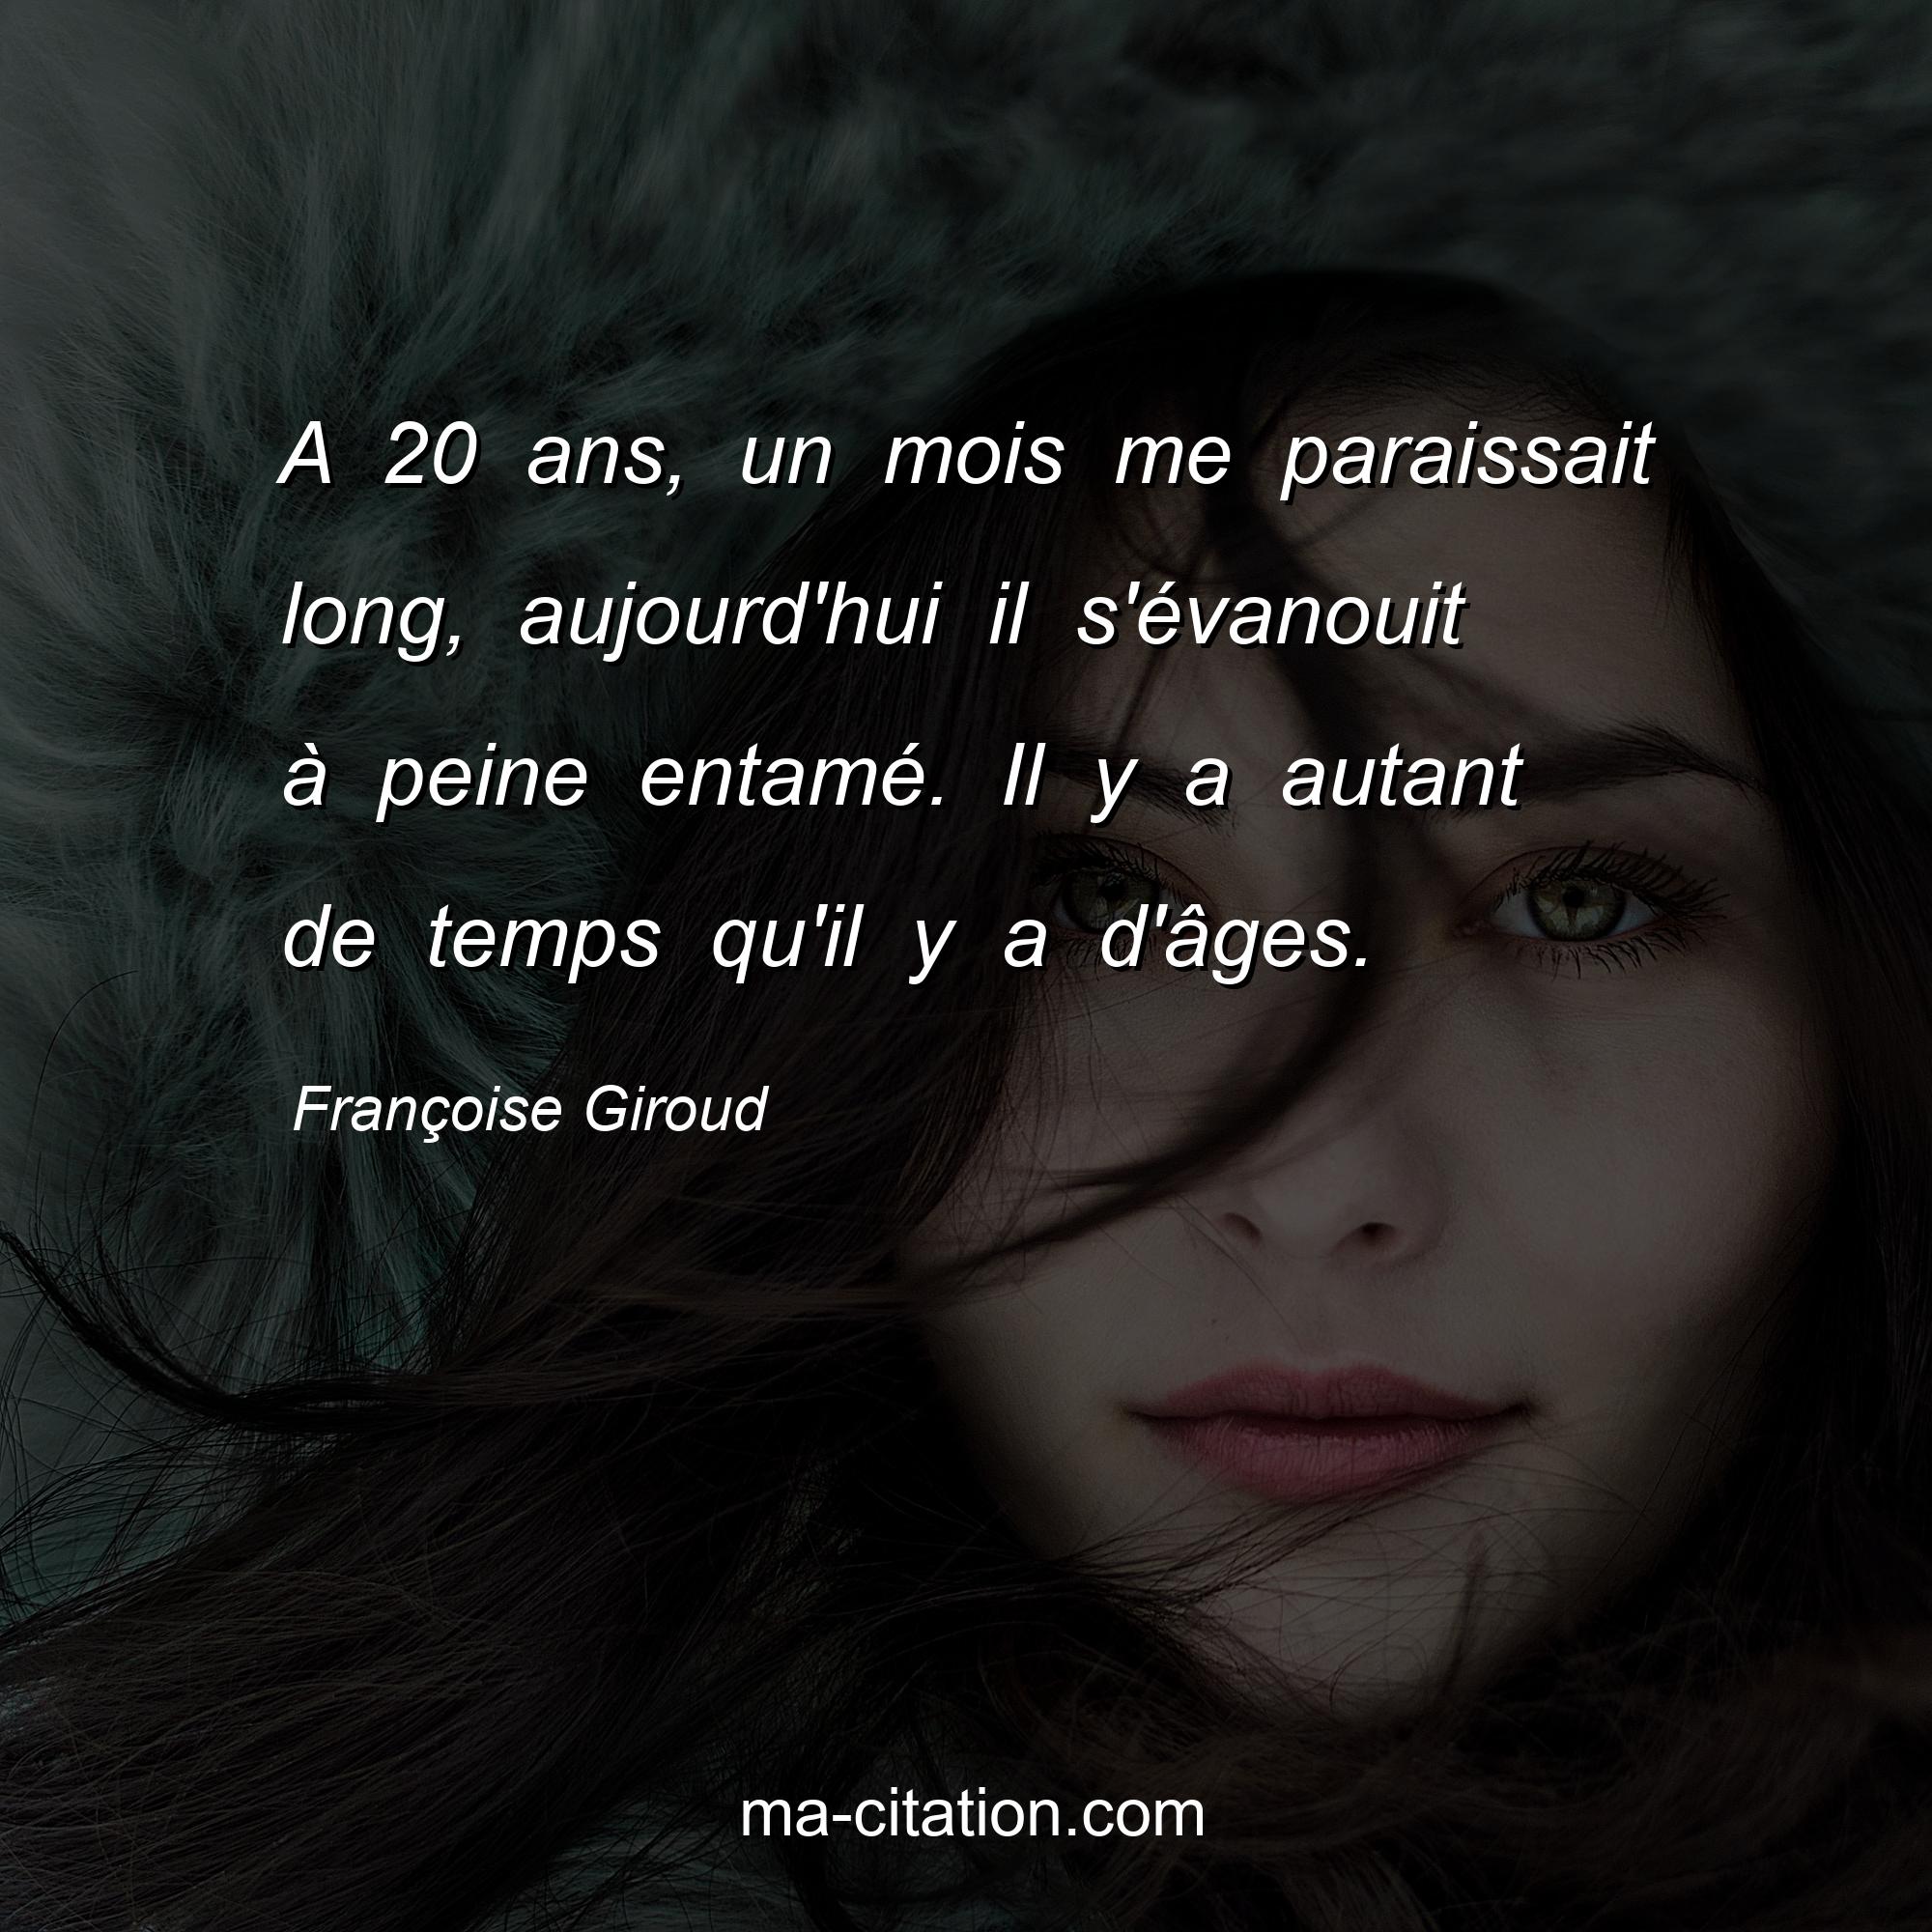 Françoise Giroud : A 20 ans, un mois me paraissait long, aujourd'hui il s'évanouit à peine entamé. Il y a autant de temps qu'il y a d'âges.